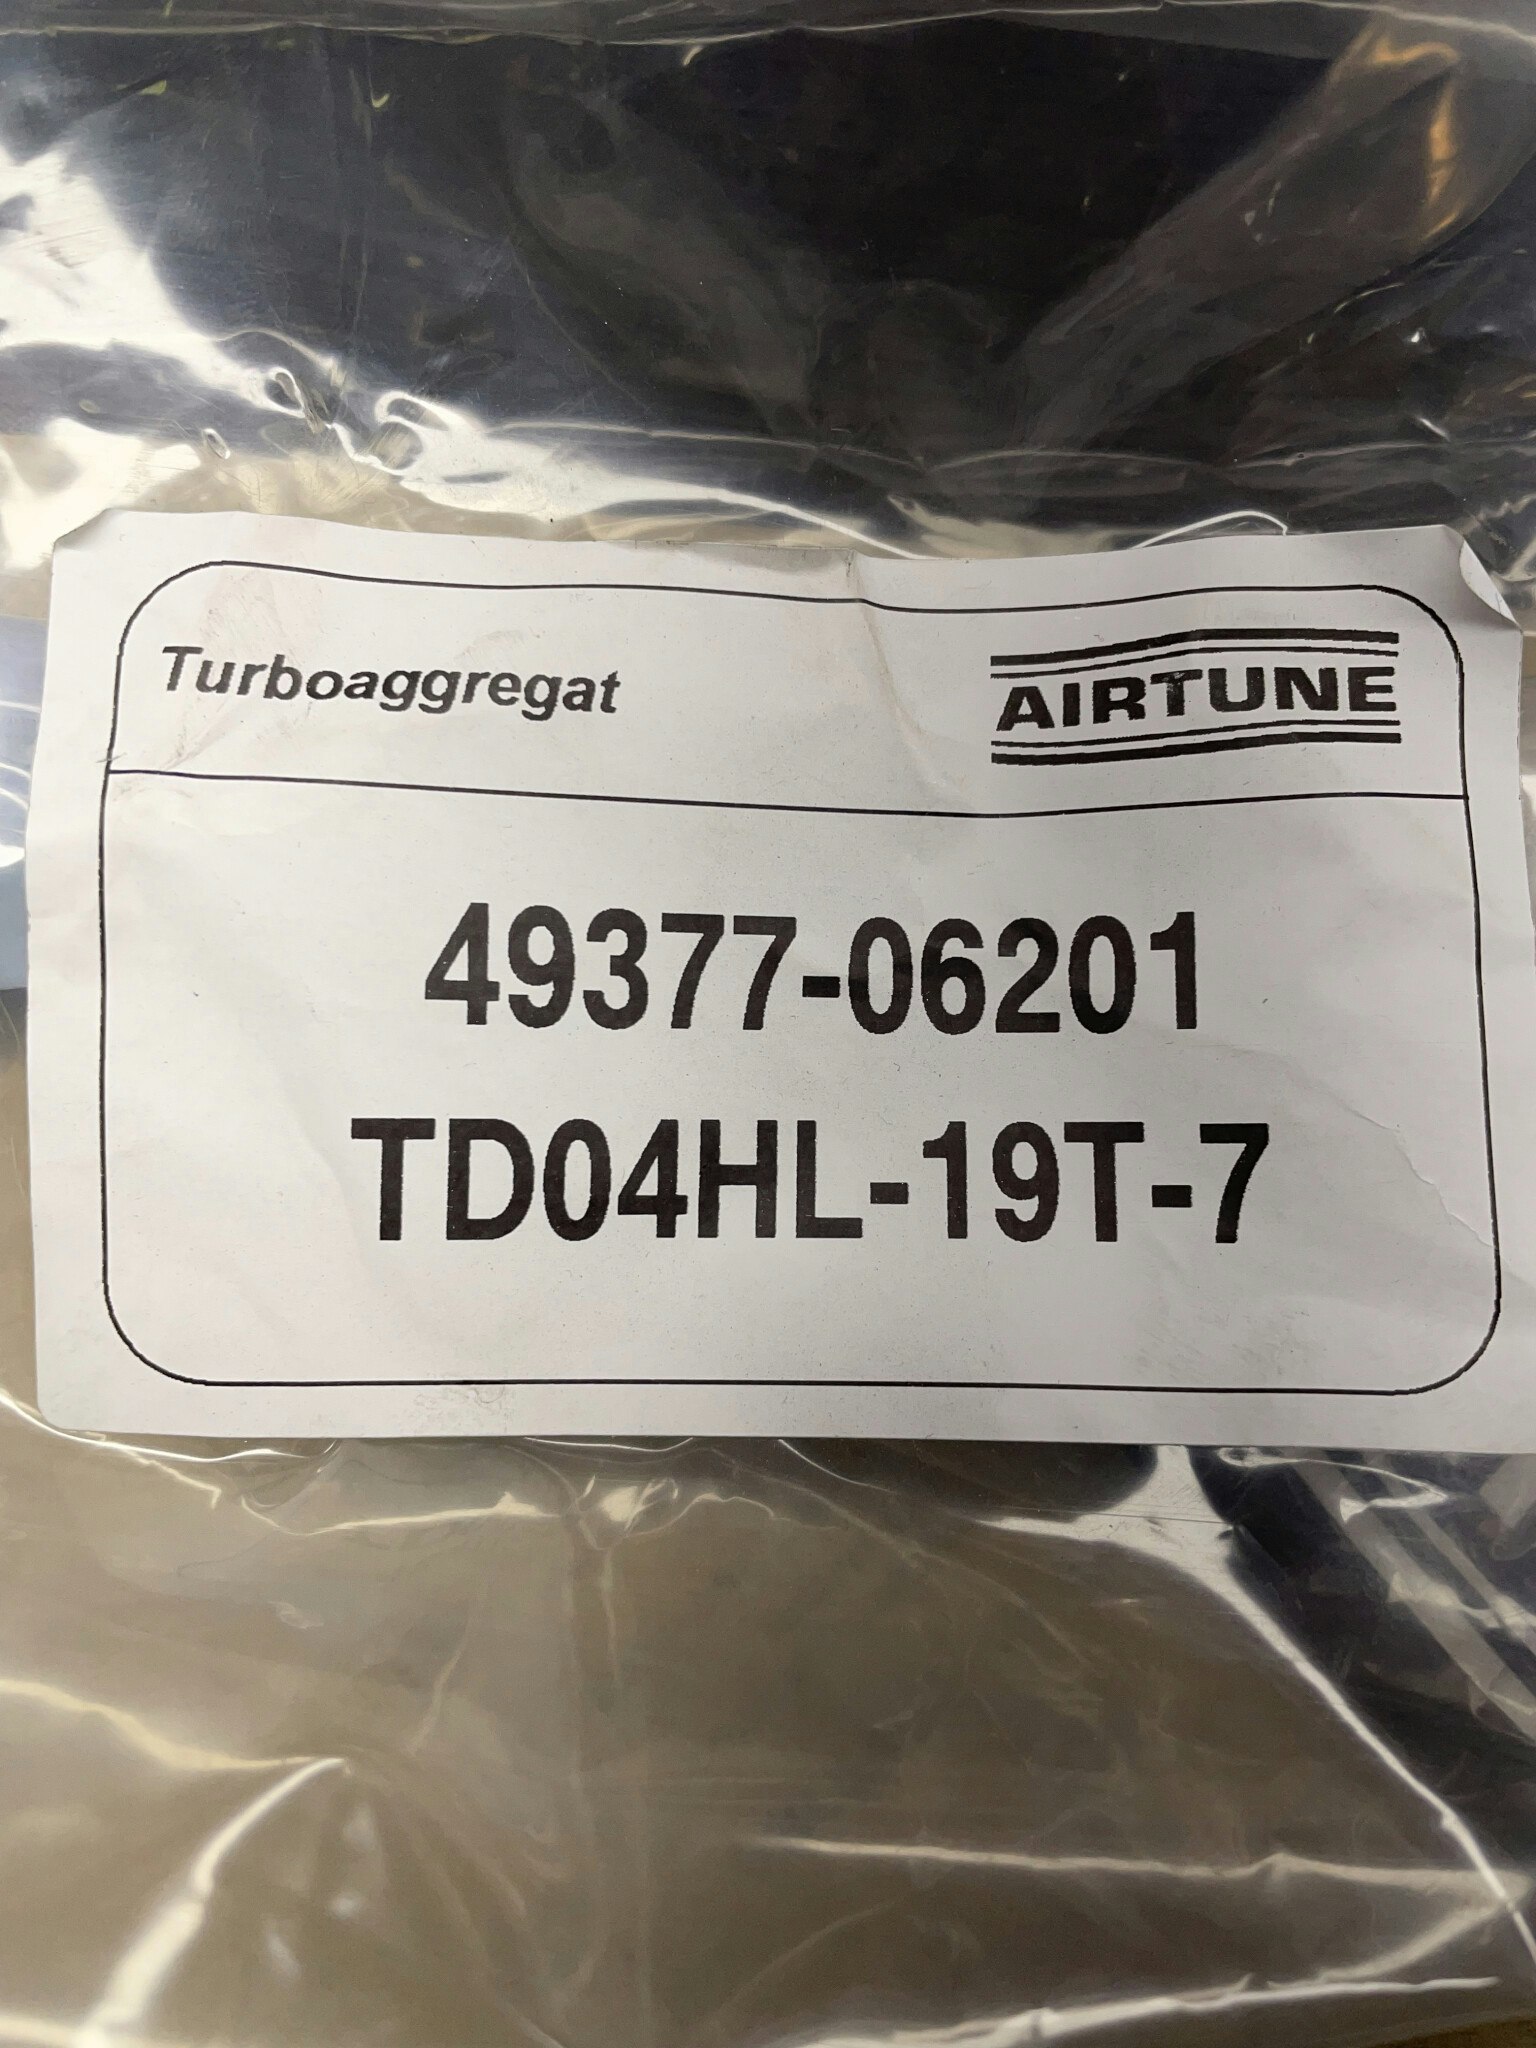 Trimturbo / Utbytesturbo till Volvo 2.5T - TD04HL-19T